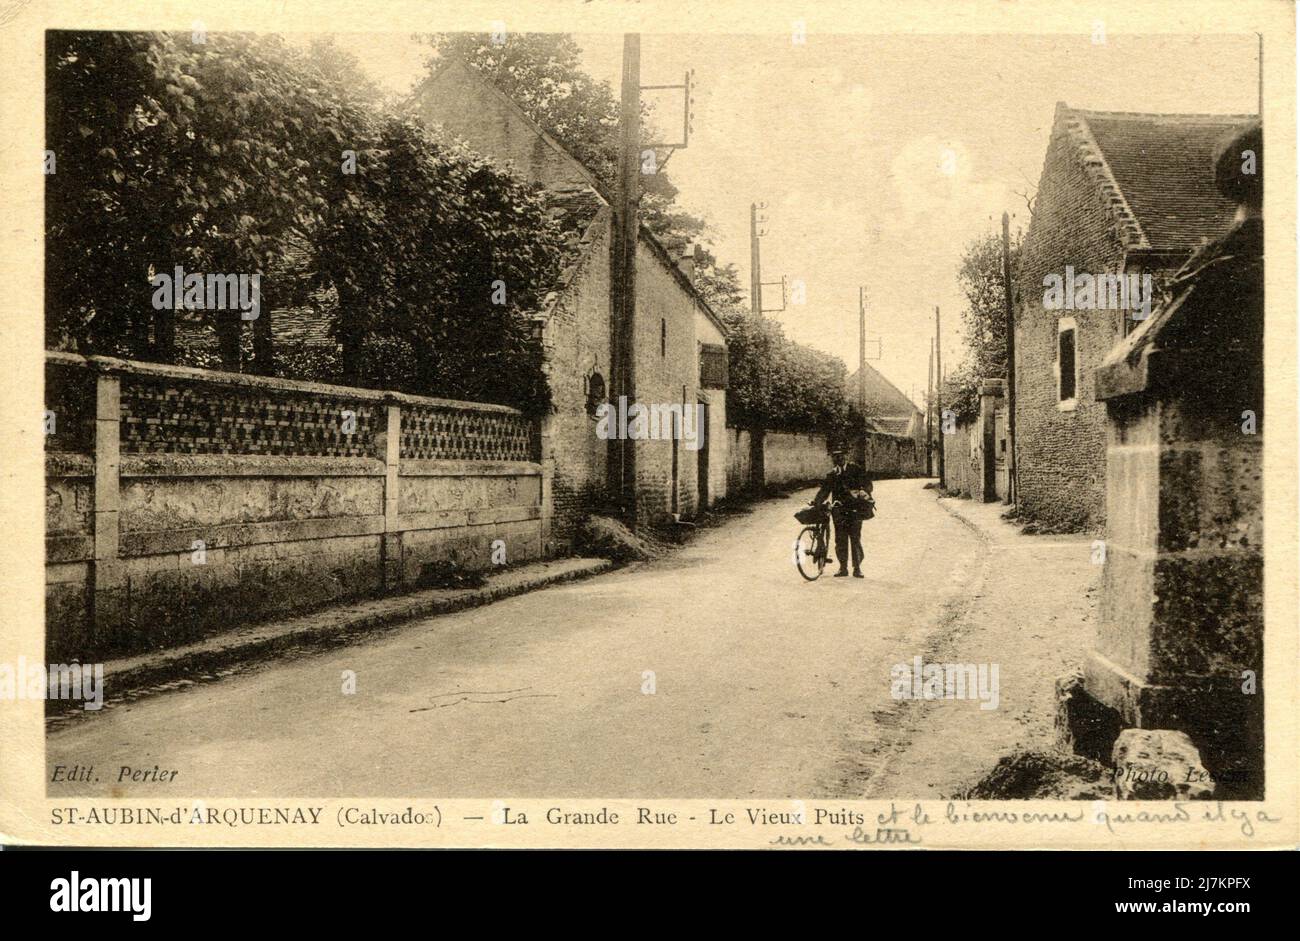 Saint-Aubin-d'Arquenay Abteilung: 14 - Calvados Region: Normandie (ehemals Unternormannie) Vintage-Postkarte, Ende 19. - Anfang 20. Jahrhundert Stockfoto